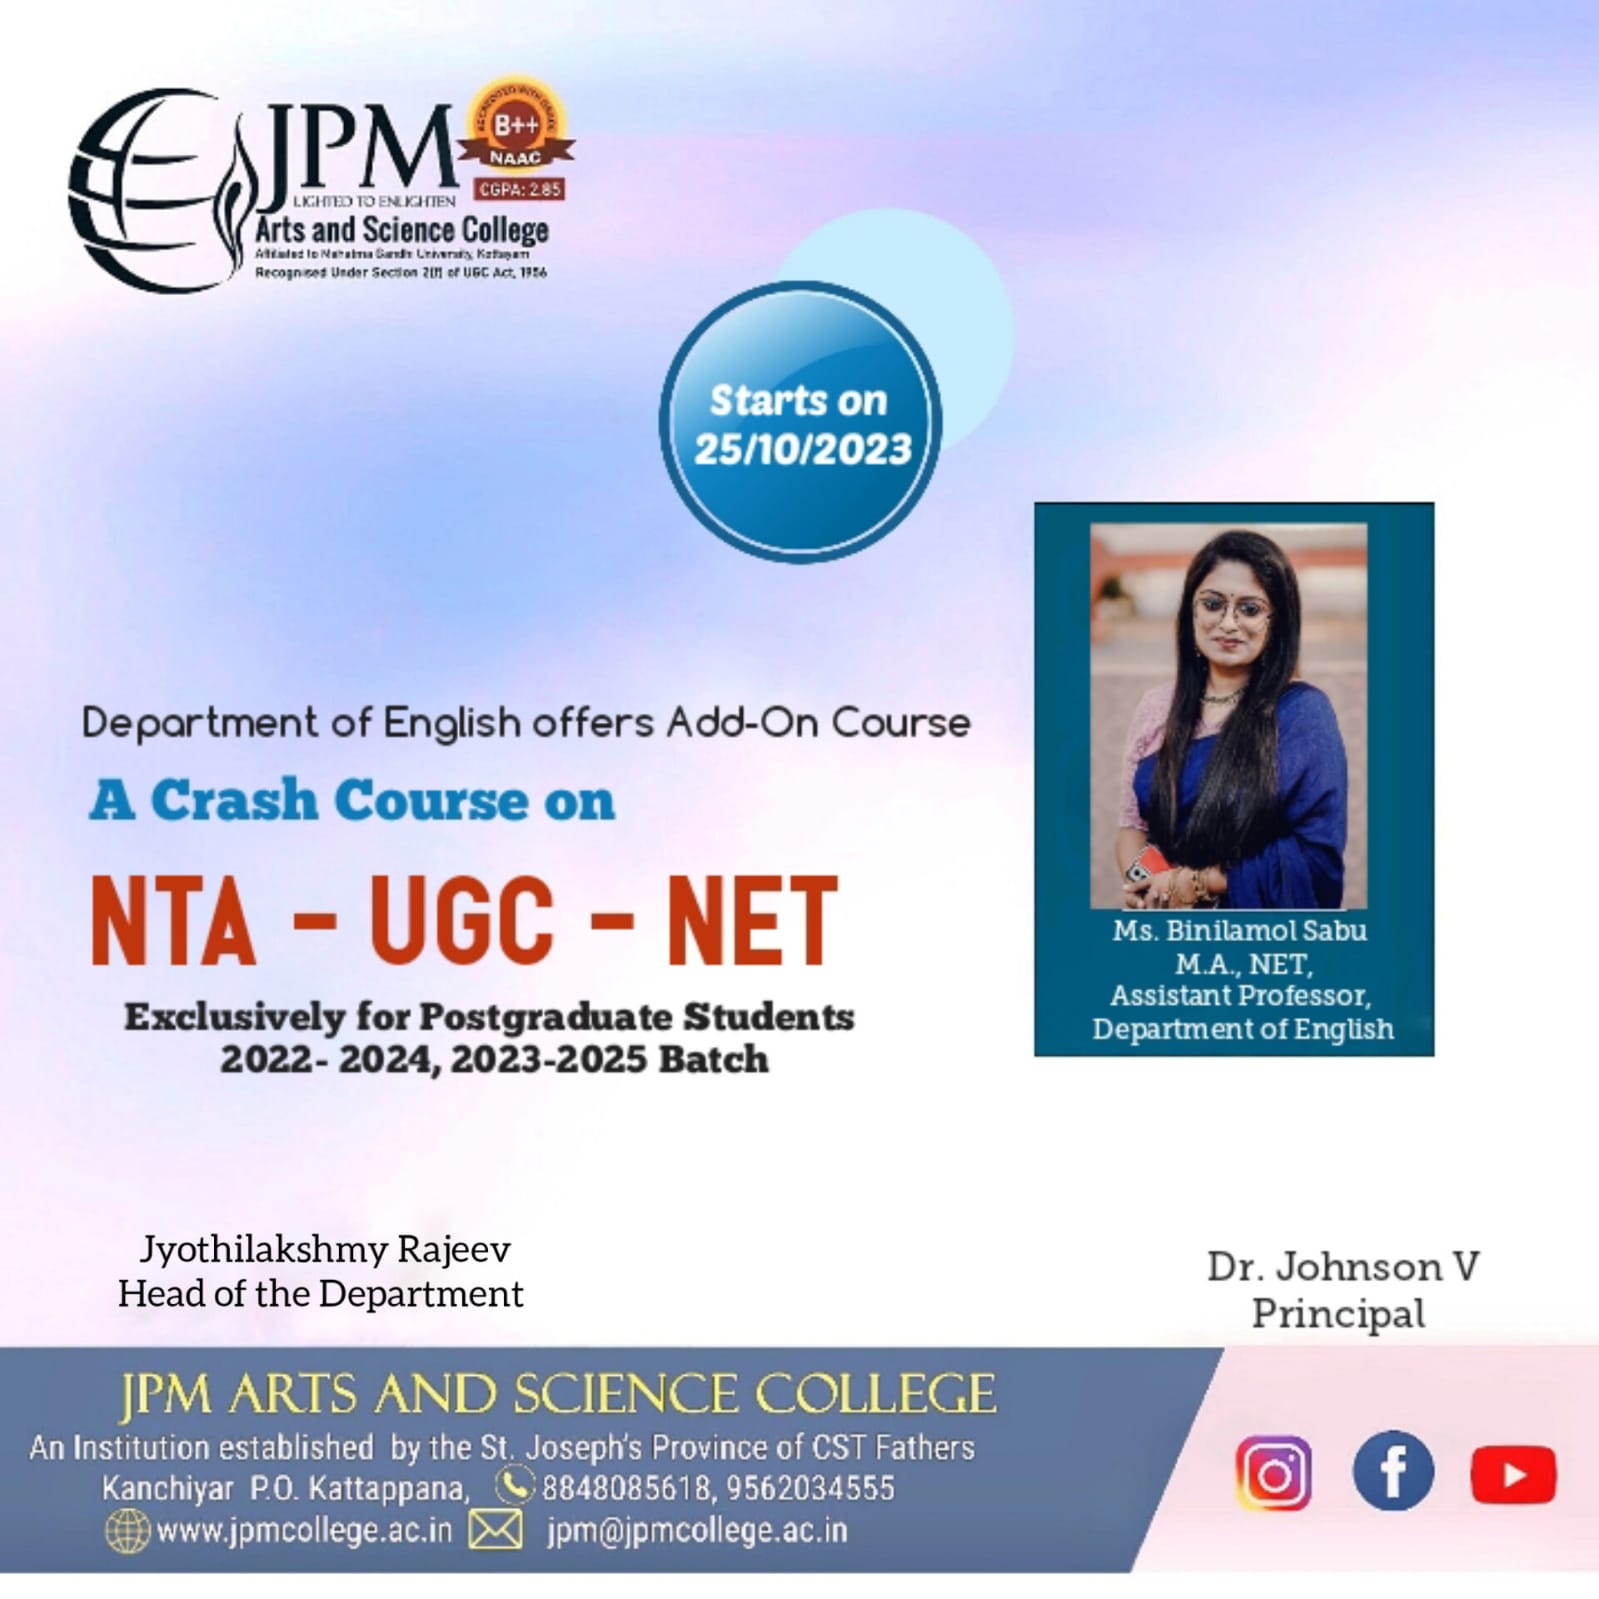 A Crash Course on NTA - UGC - NET